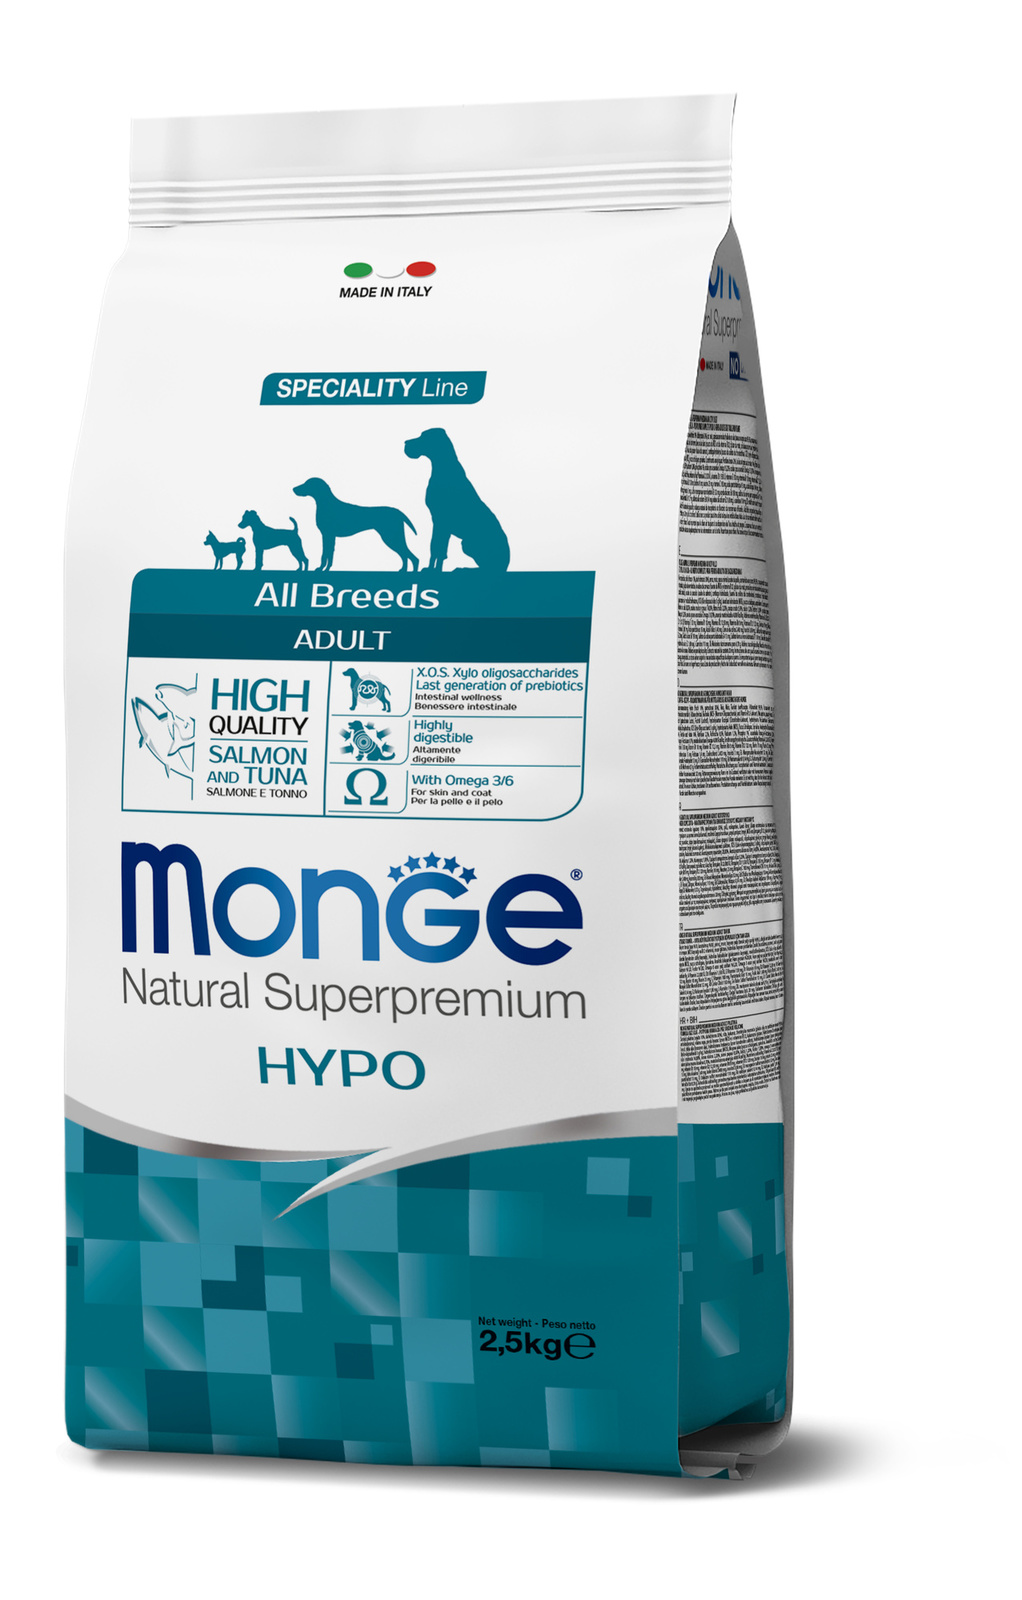 гипоаллергенный корм для собак всех пород, лосось с тунцом (2,5 кг) Monge гипоаллергенный корм для собак всех пород, лосось с тунцом (2,5 кг) - фото 1